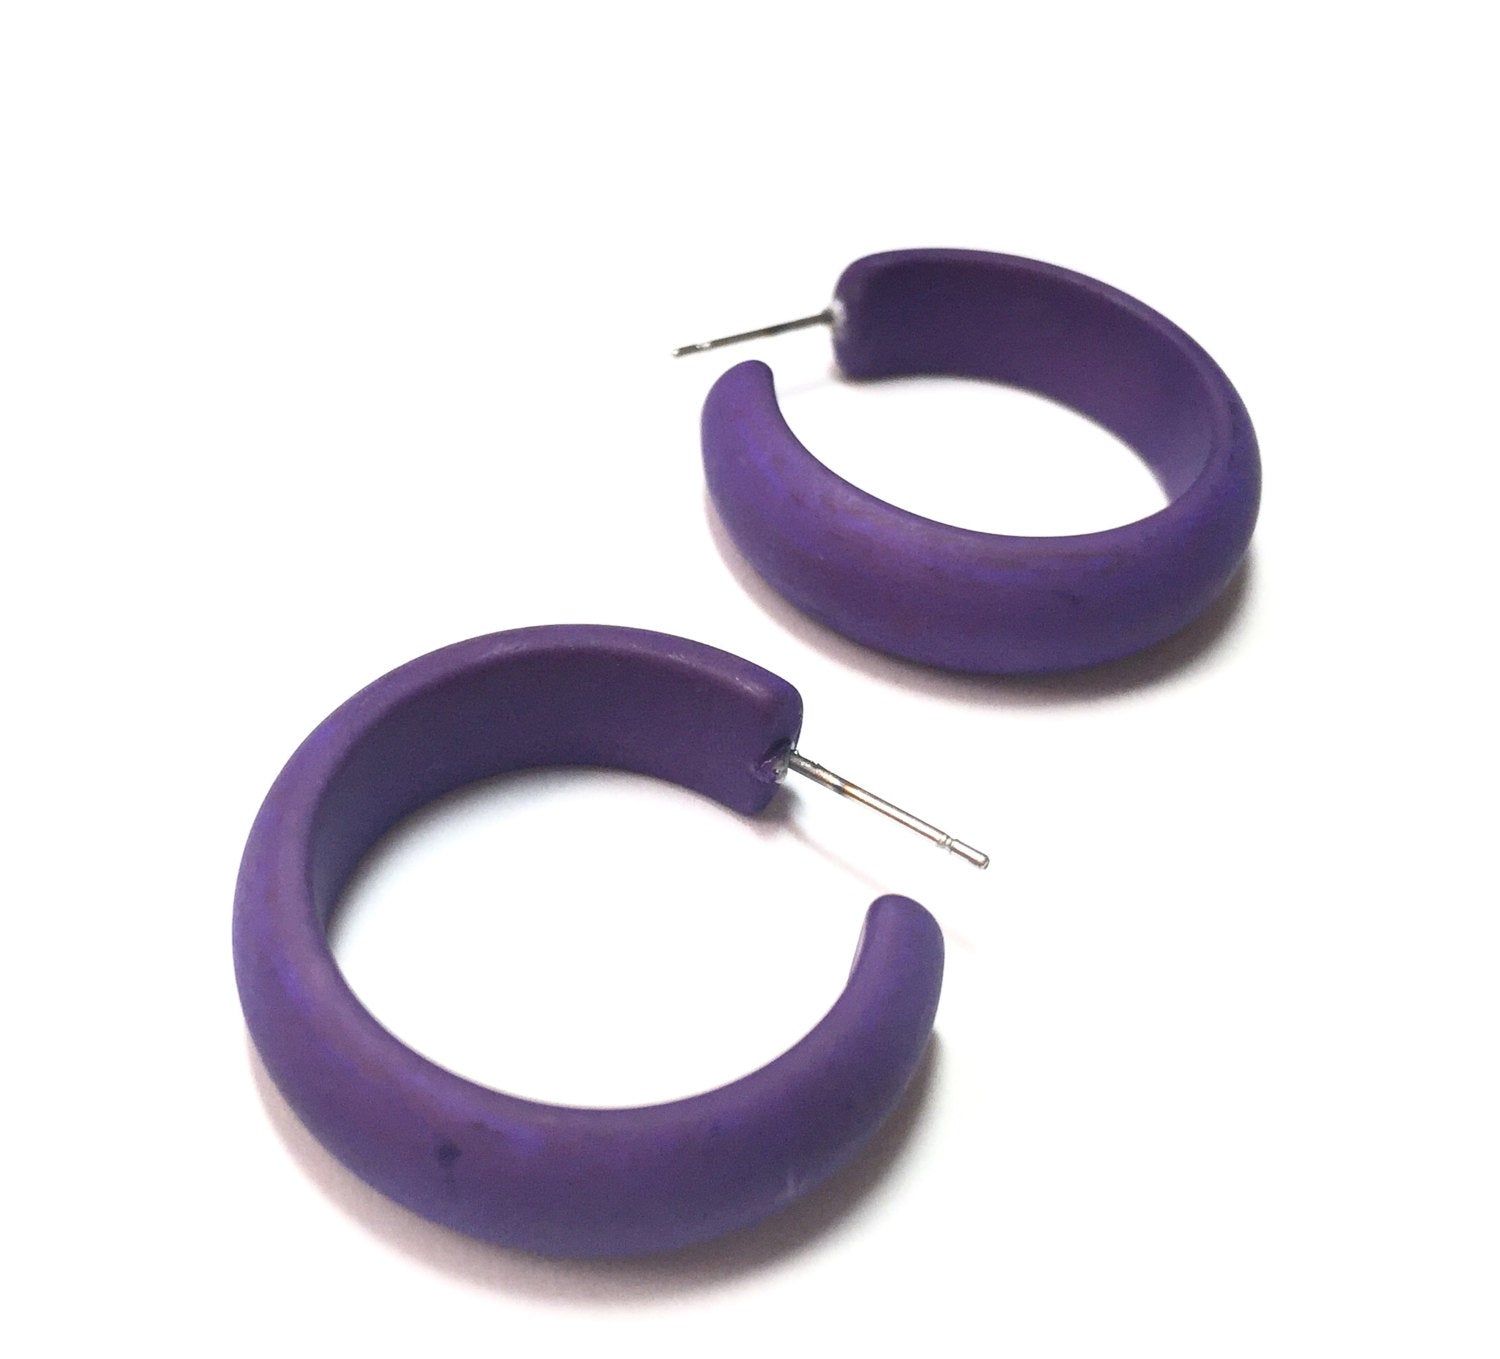 dark purple hoops